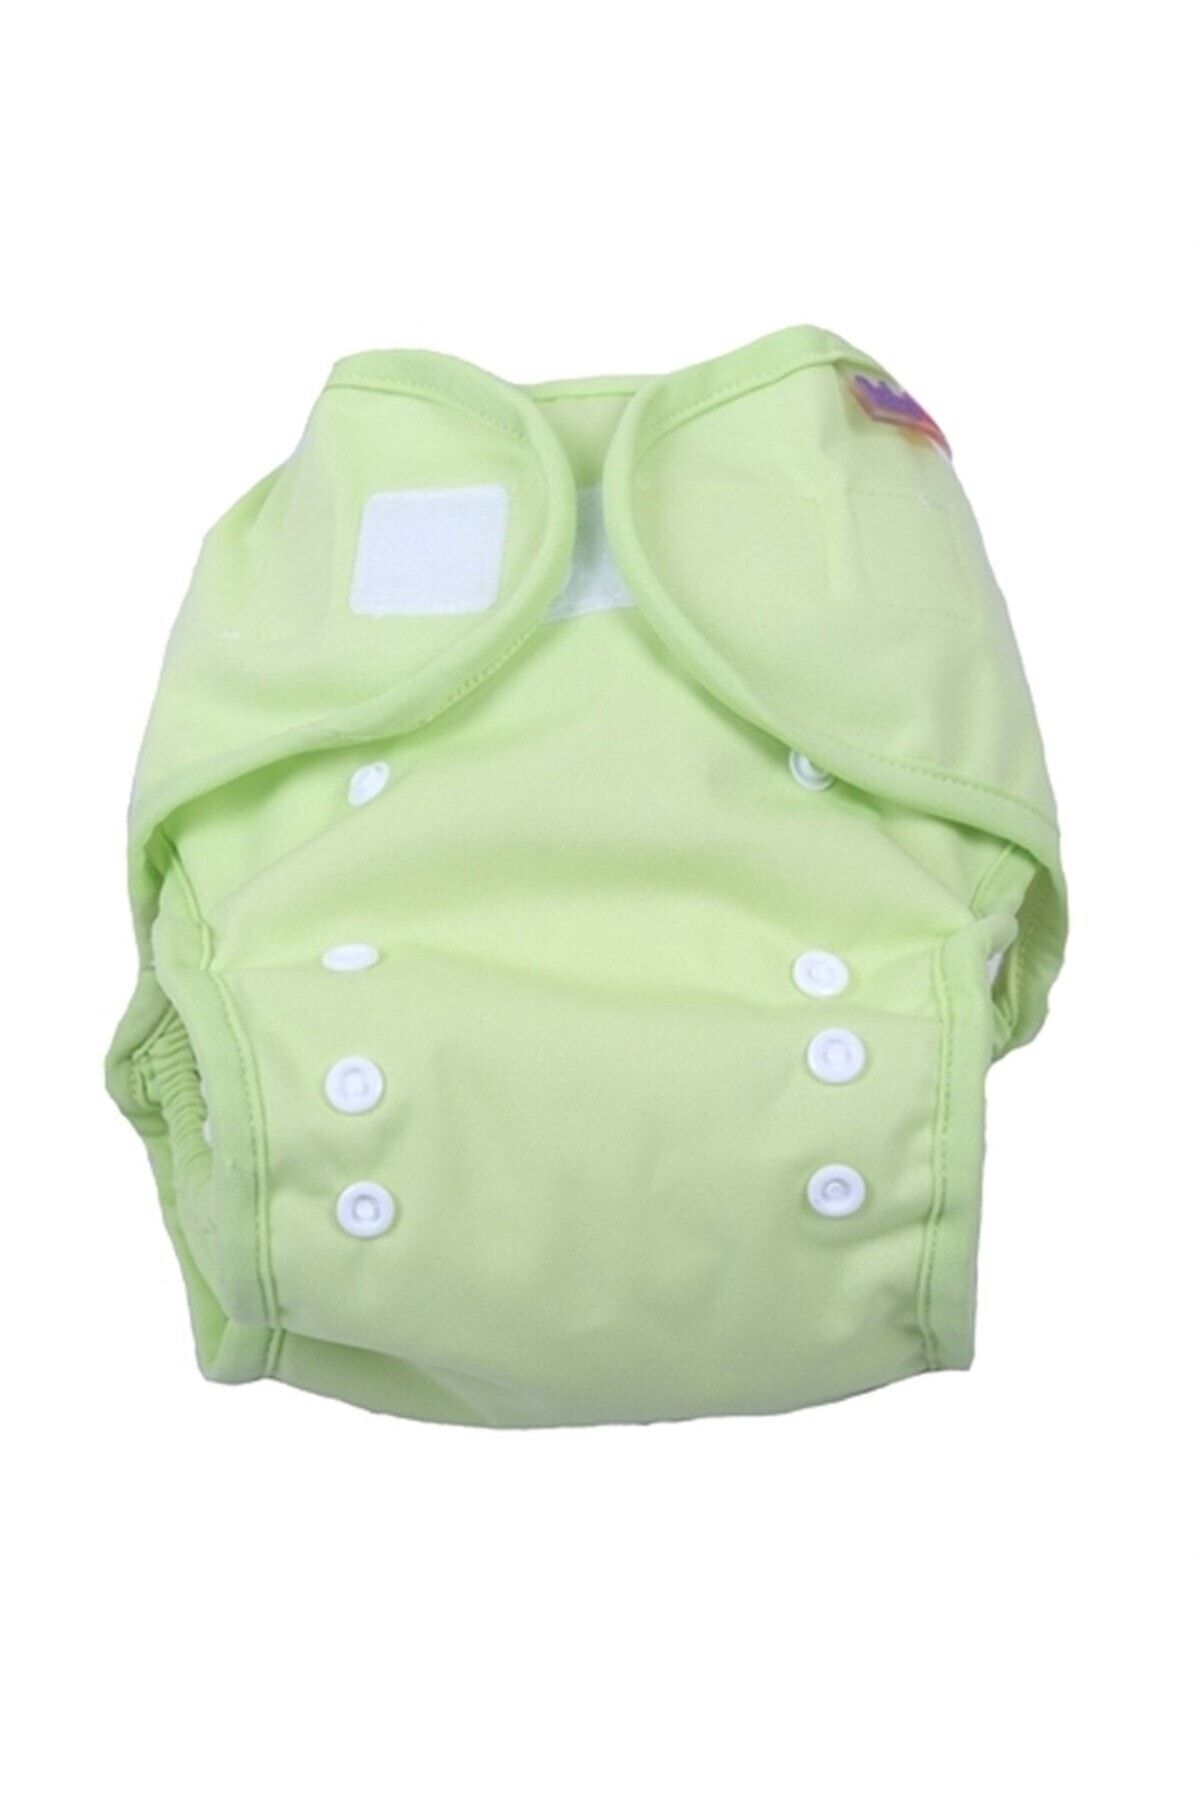 BabyNEO - Tek Beden Yıkanabilir Bebek Bezi Sızdırmaz Dış Bez Cover - Lime